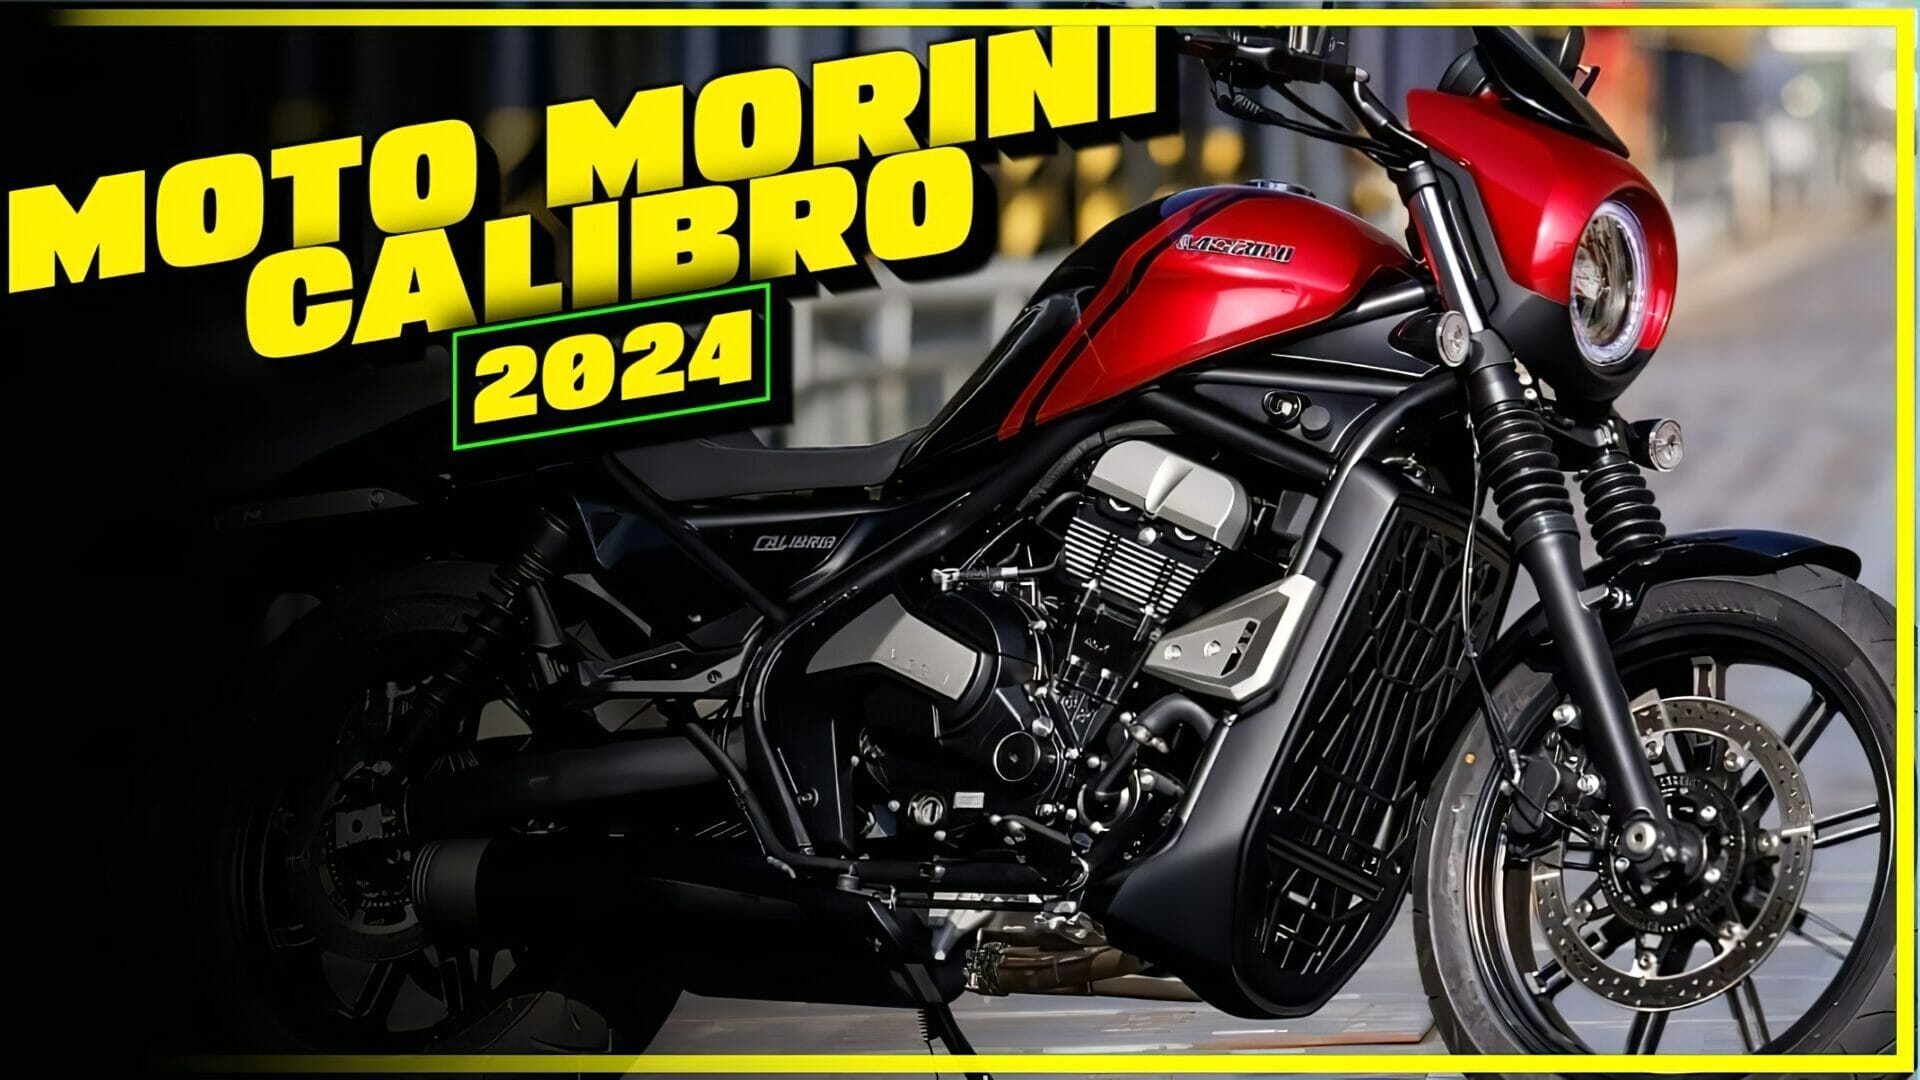 Moto Morini Calibro: A blend of European style and American flair